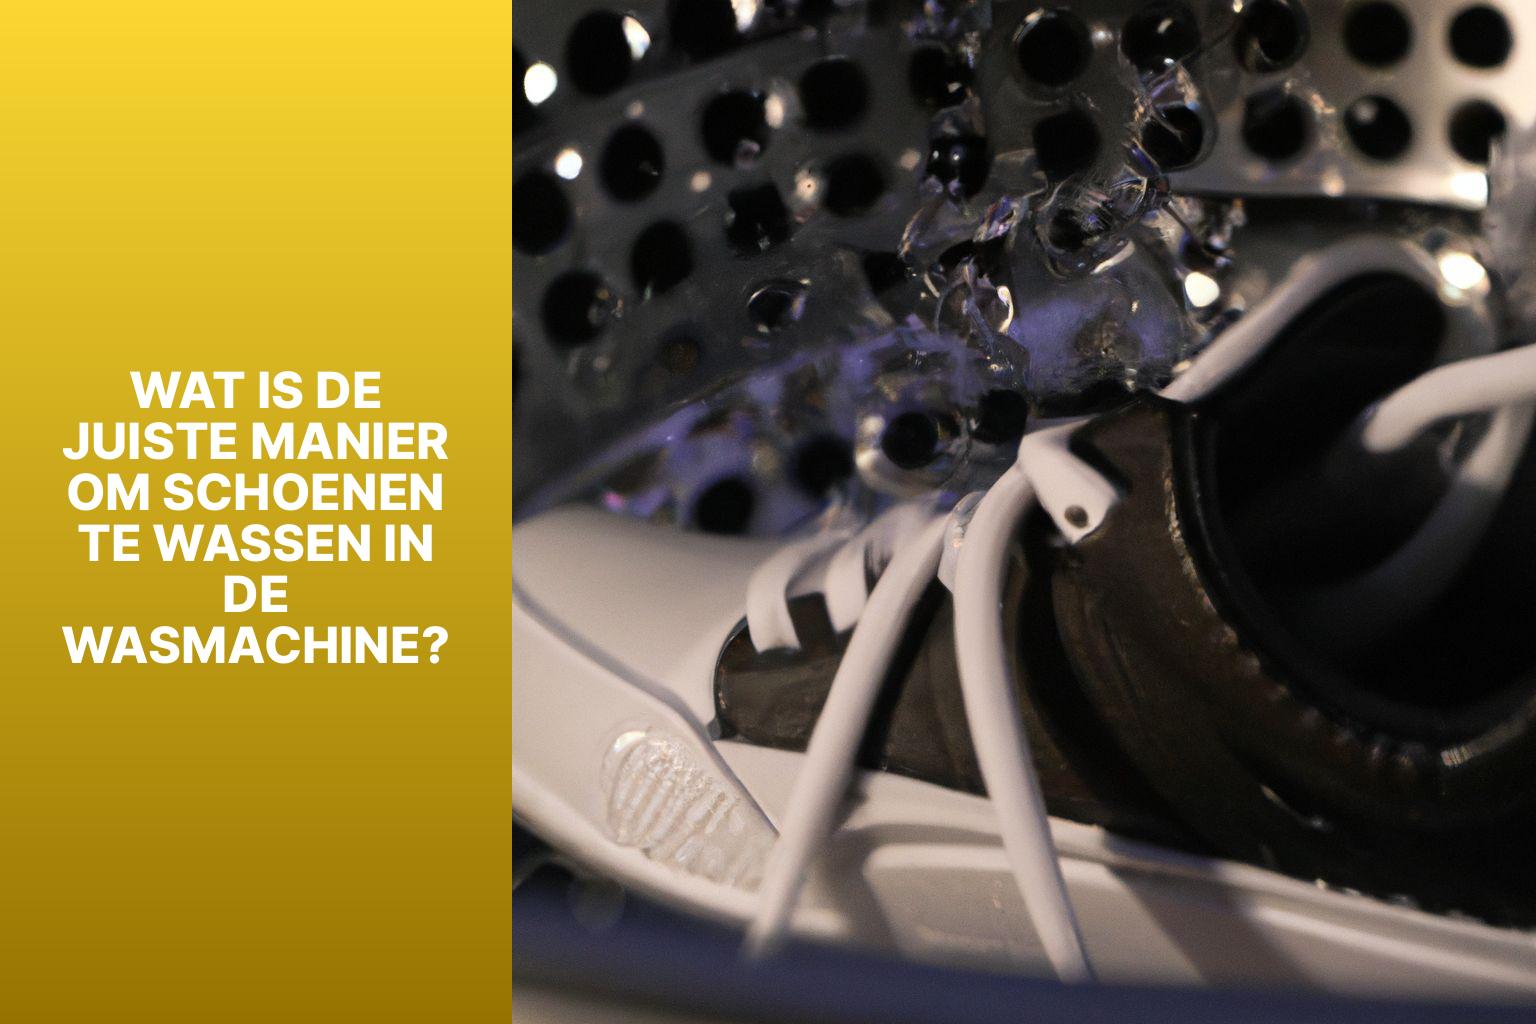 Wat is de juiste manier om schoenen te wassen in de wasmachine? - Hoe moet je schoenen wassen in de wasmachine? 